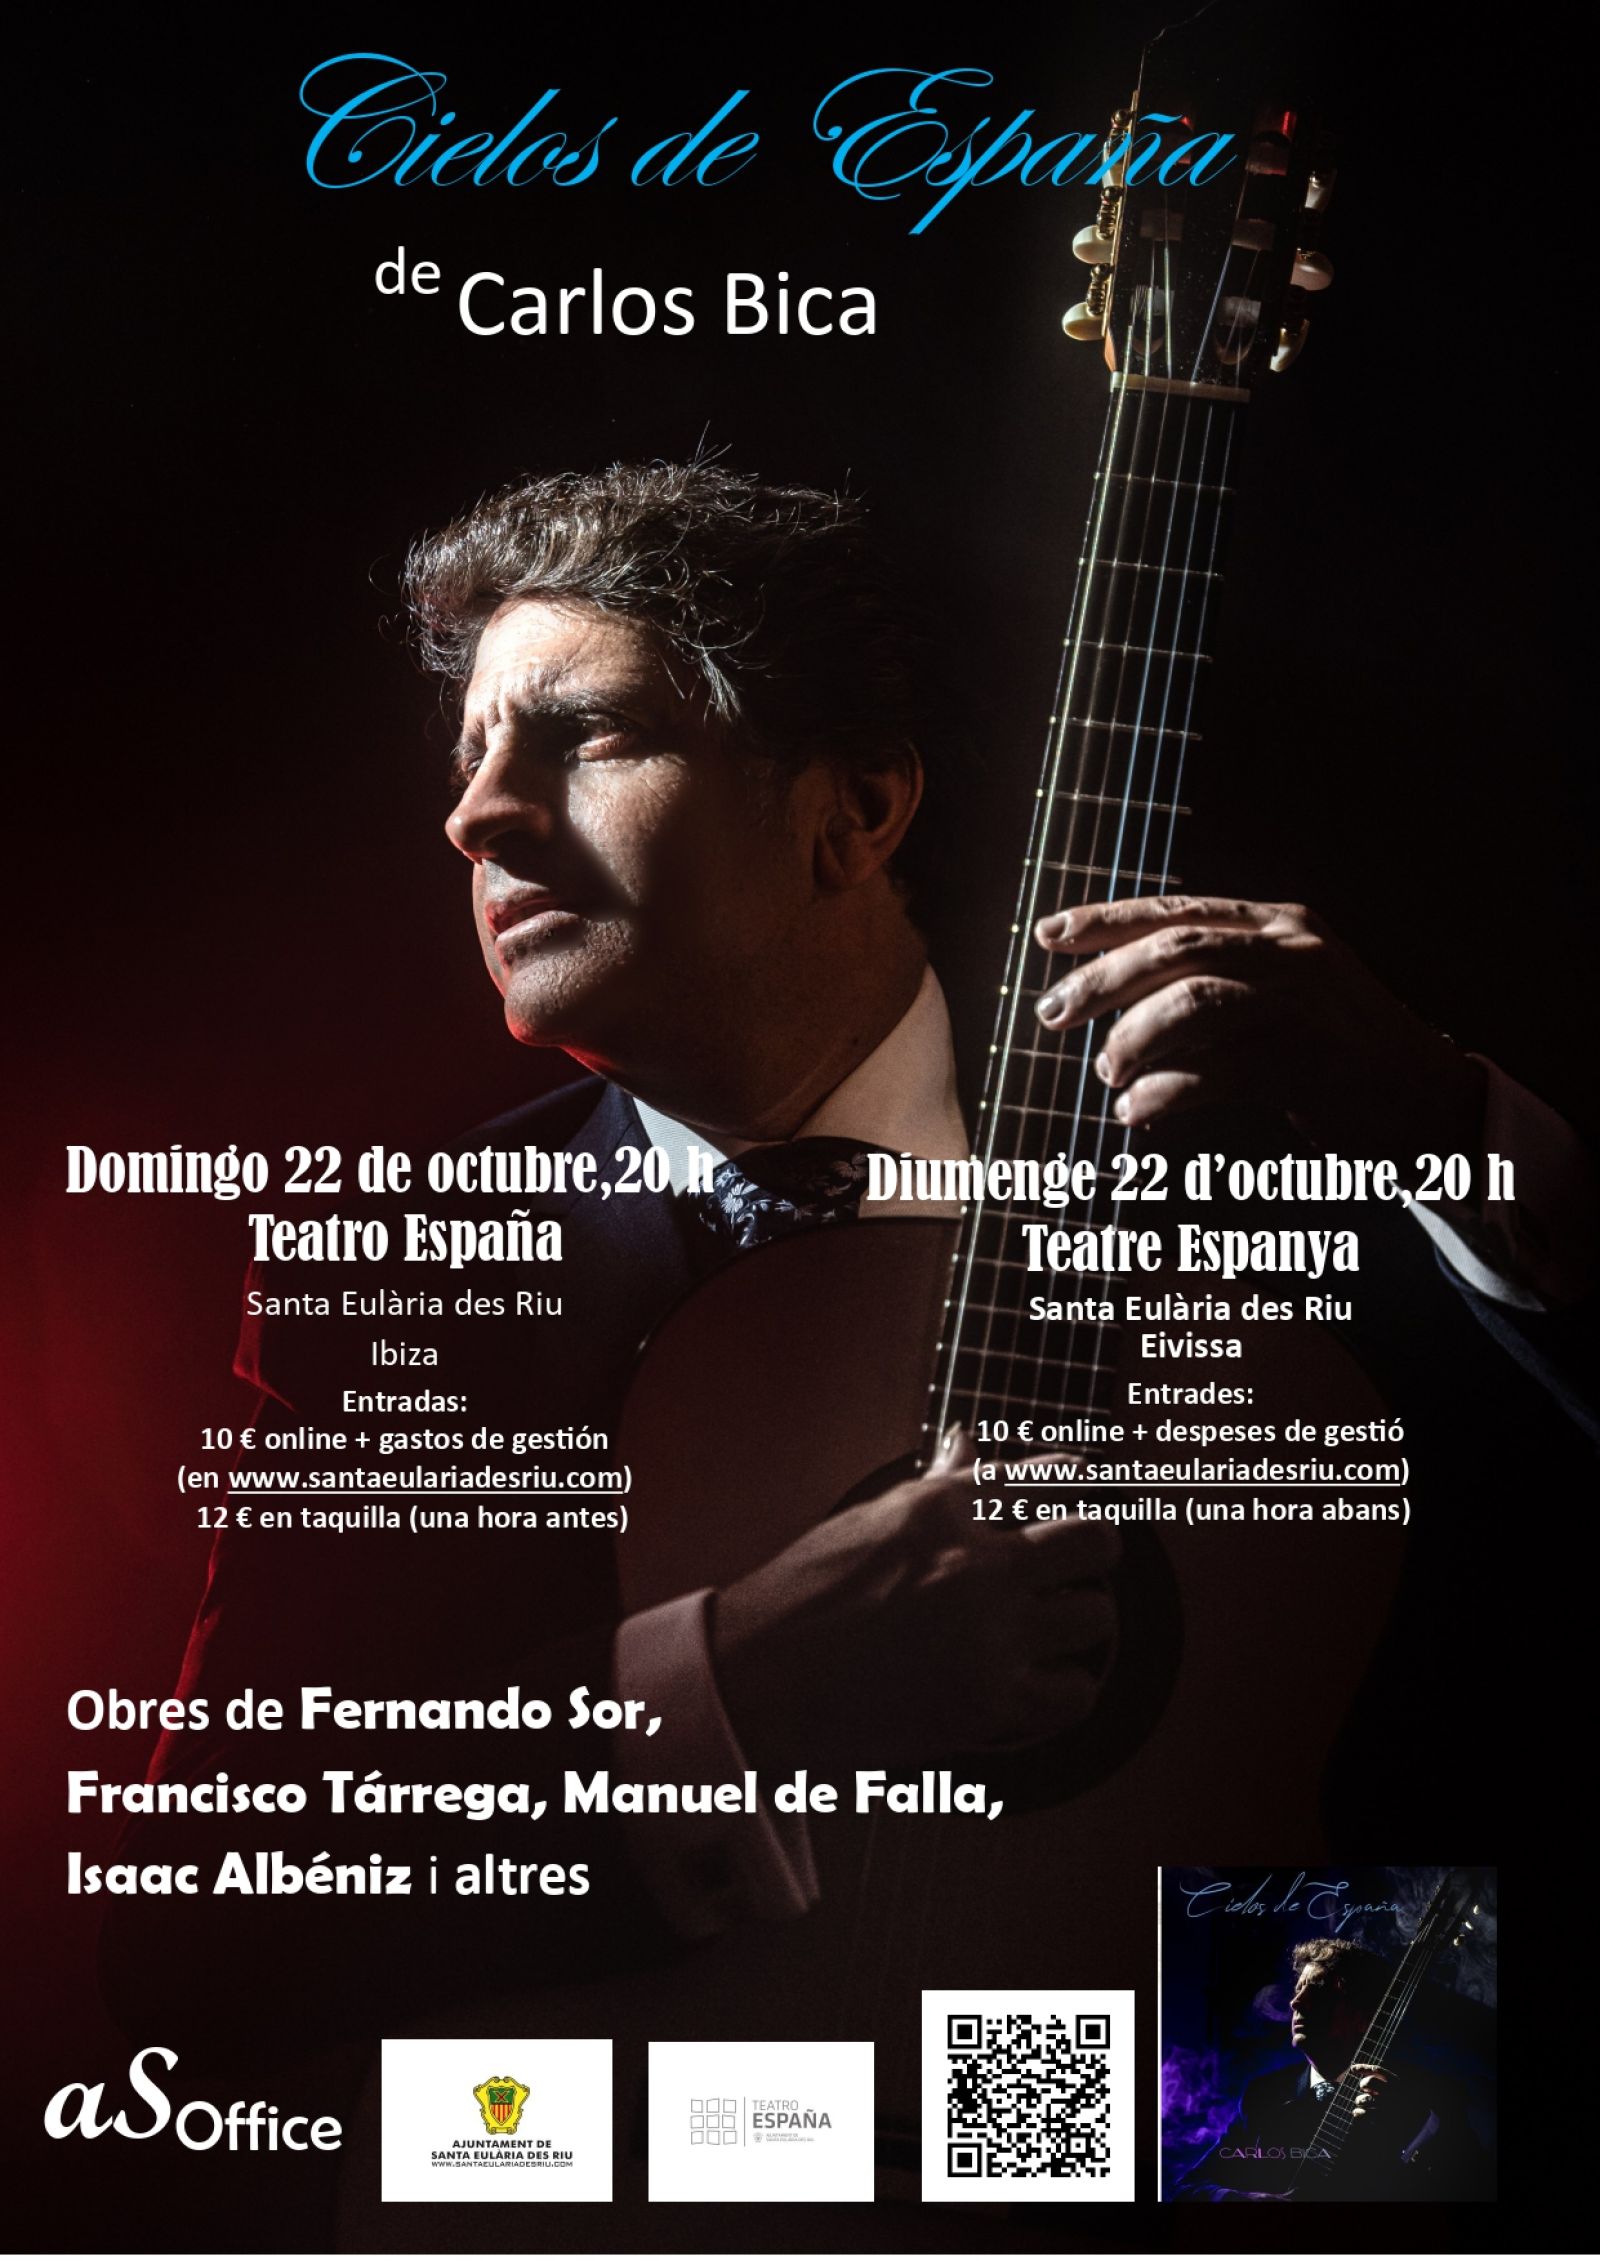 El guitarrista clàssic Carlos Bica presenta al Teatre Espanya el seu homenatge a la ‘sonoritat espanyola’ amb ‘Cielos de España